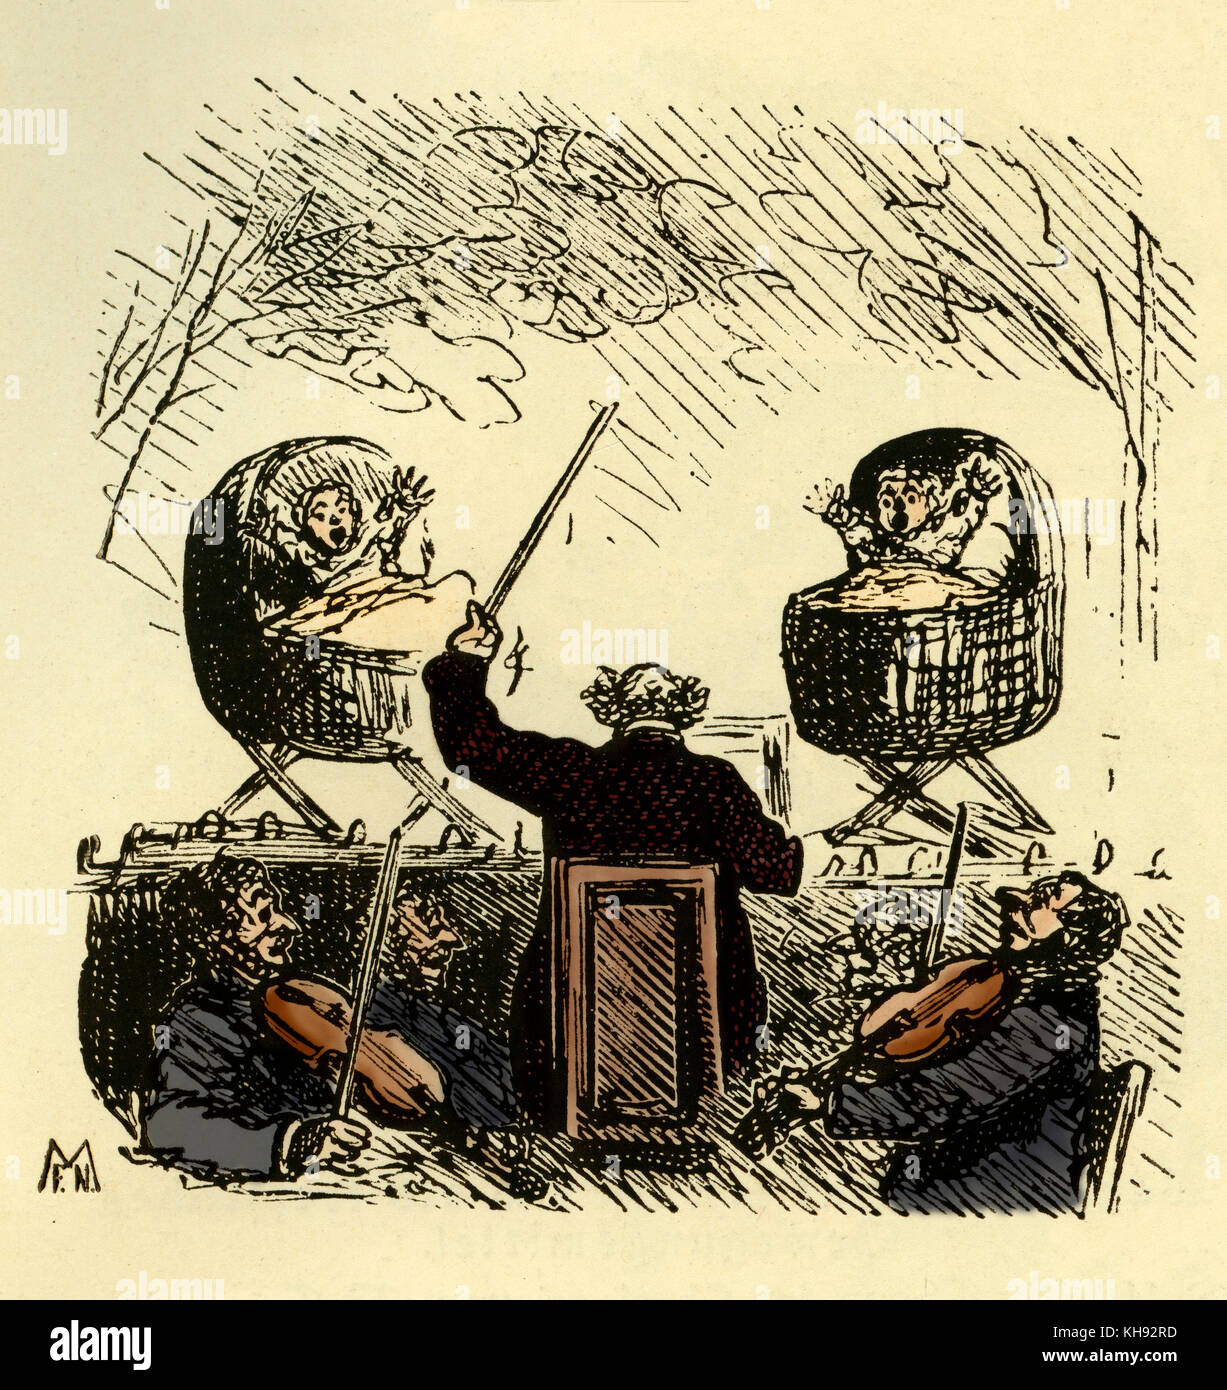 Richard Wagner 's Tannhäuser - caricatura por Amédée de Noé (conocido como Cham). Título: "El Sr. Roner en estaciones de enfermería ha encontrado los futuros cantantes para representaciones de Tannhäuser". RW: autor y compositor alemán, el 22 de mayo de 1813 - 13 de febrero de 1883. Foto de stock